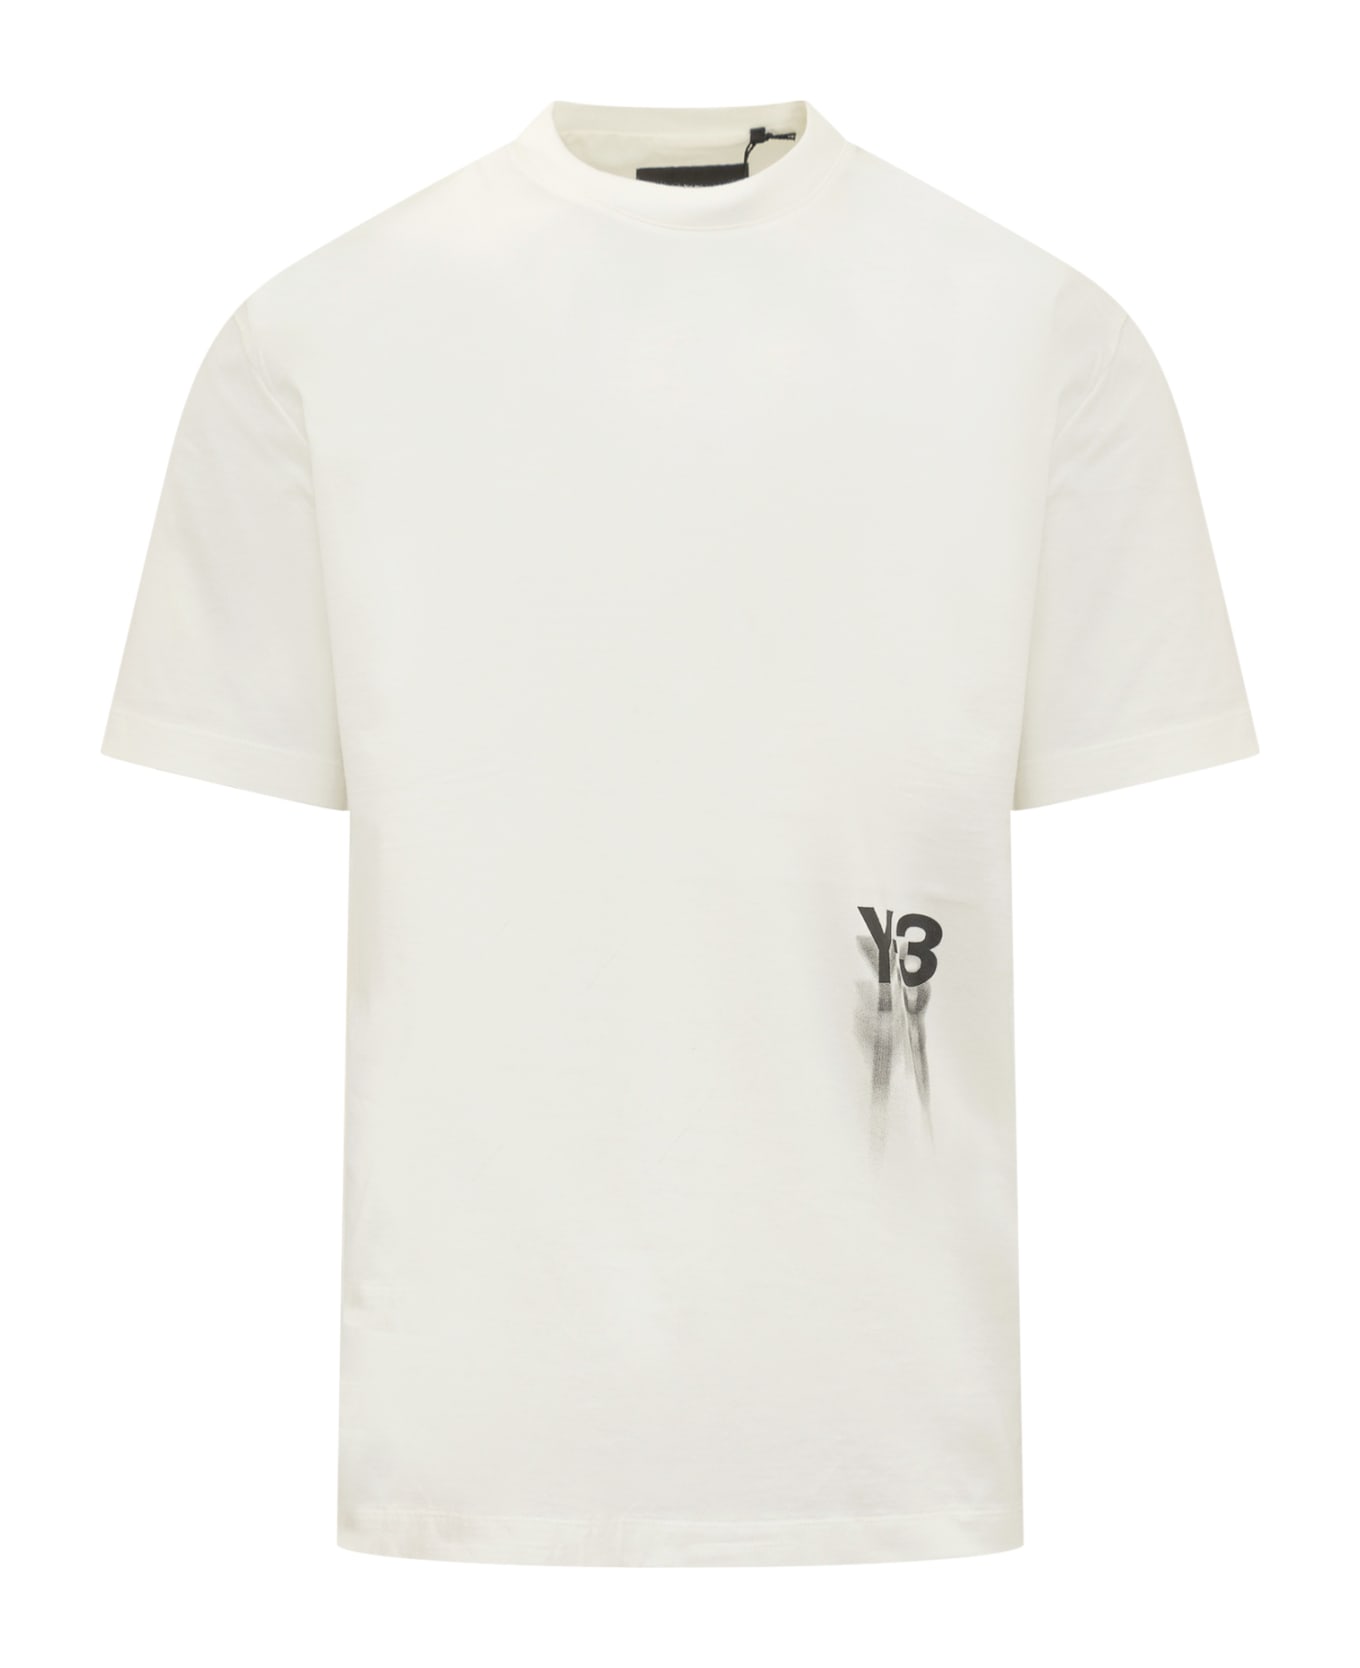 Y-3 Gfx T-shirt - OWHITE Tシャツ